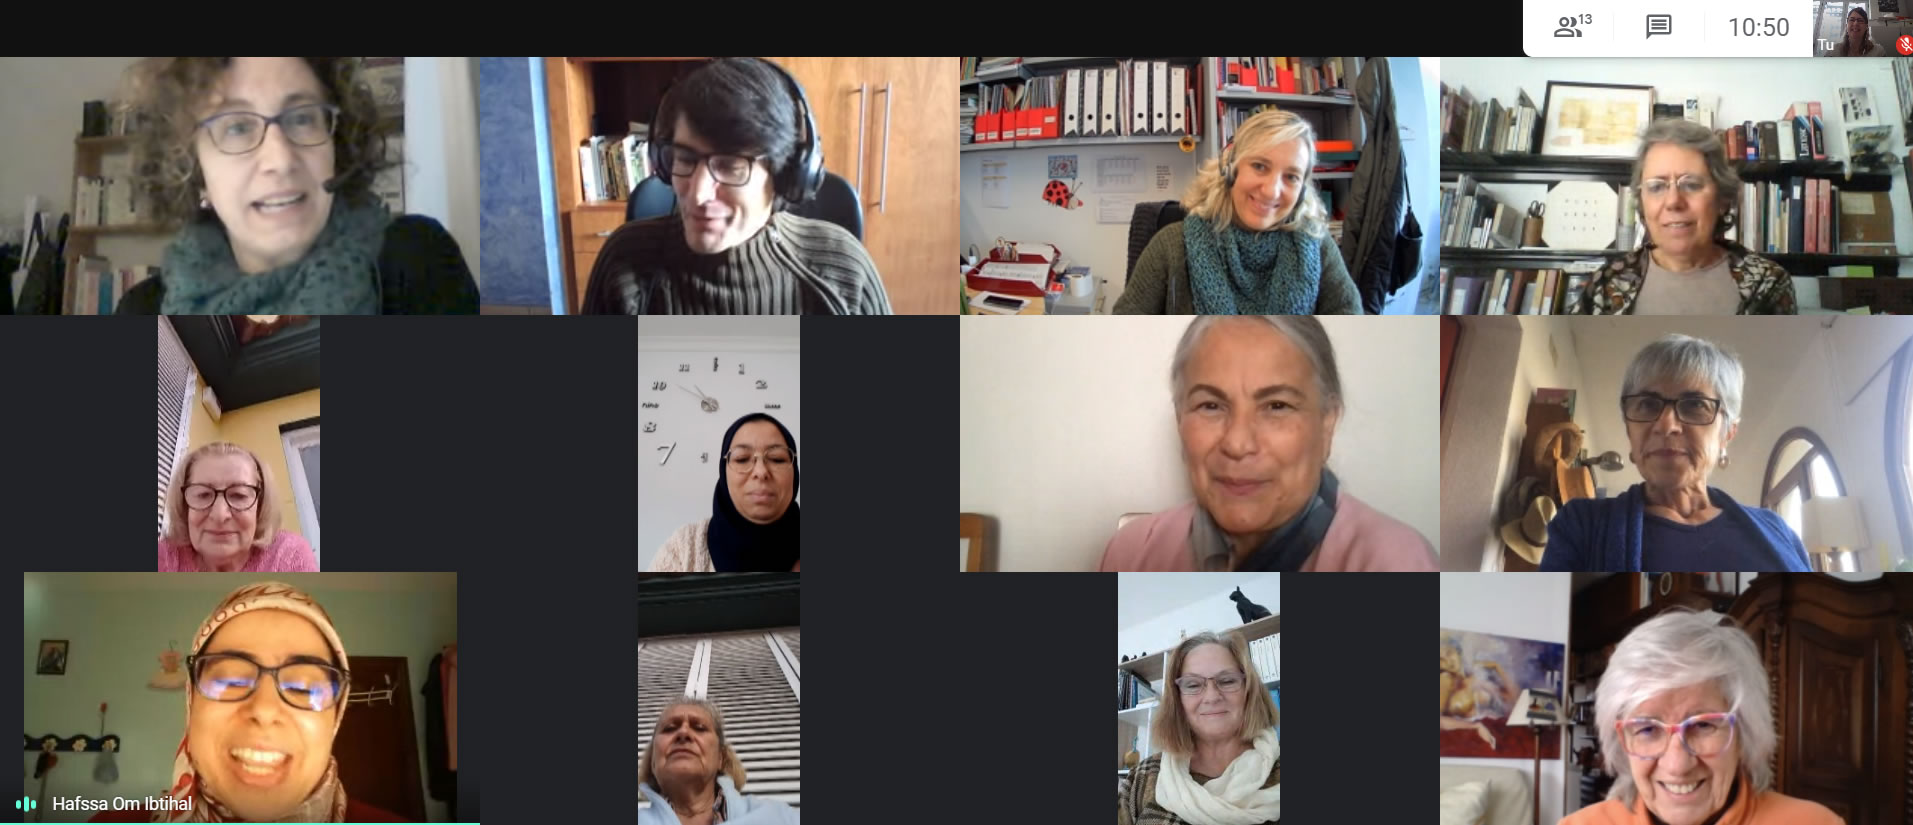 Sessió literària virtual amb l’escriptor Miquel Martín i Serra